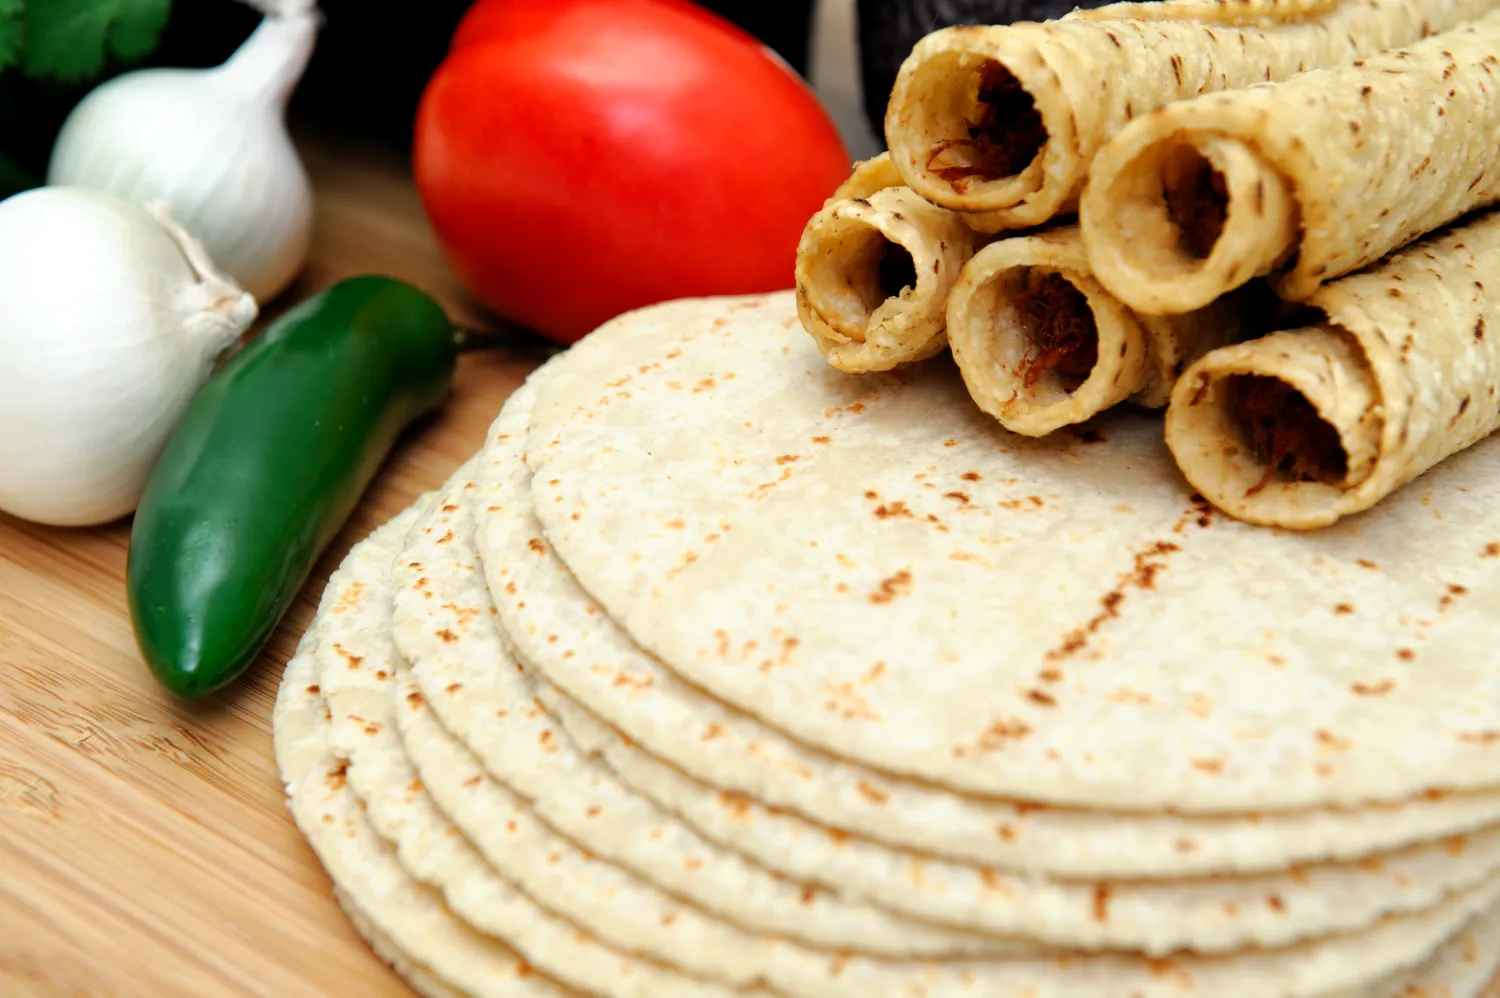 Recipes Using Tortillas